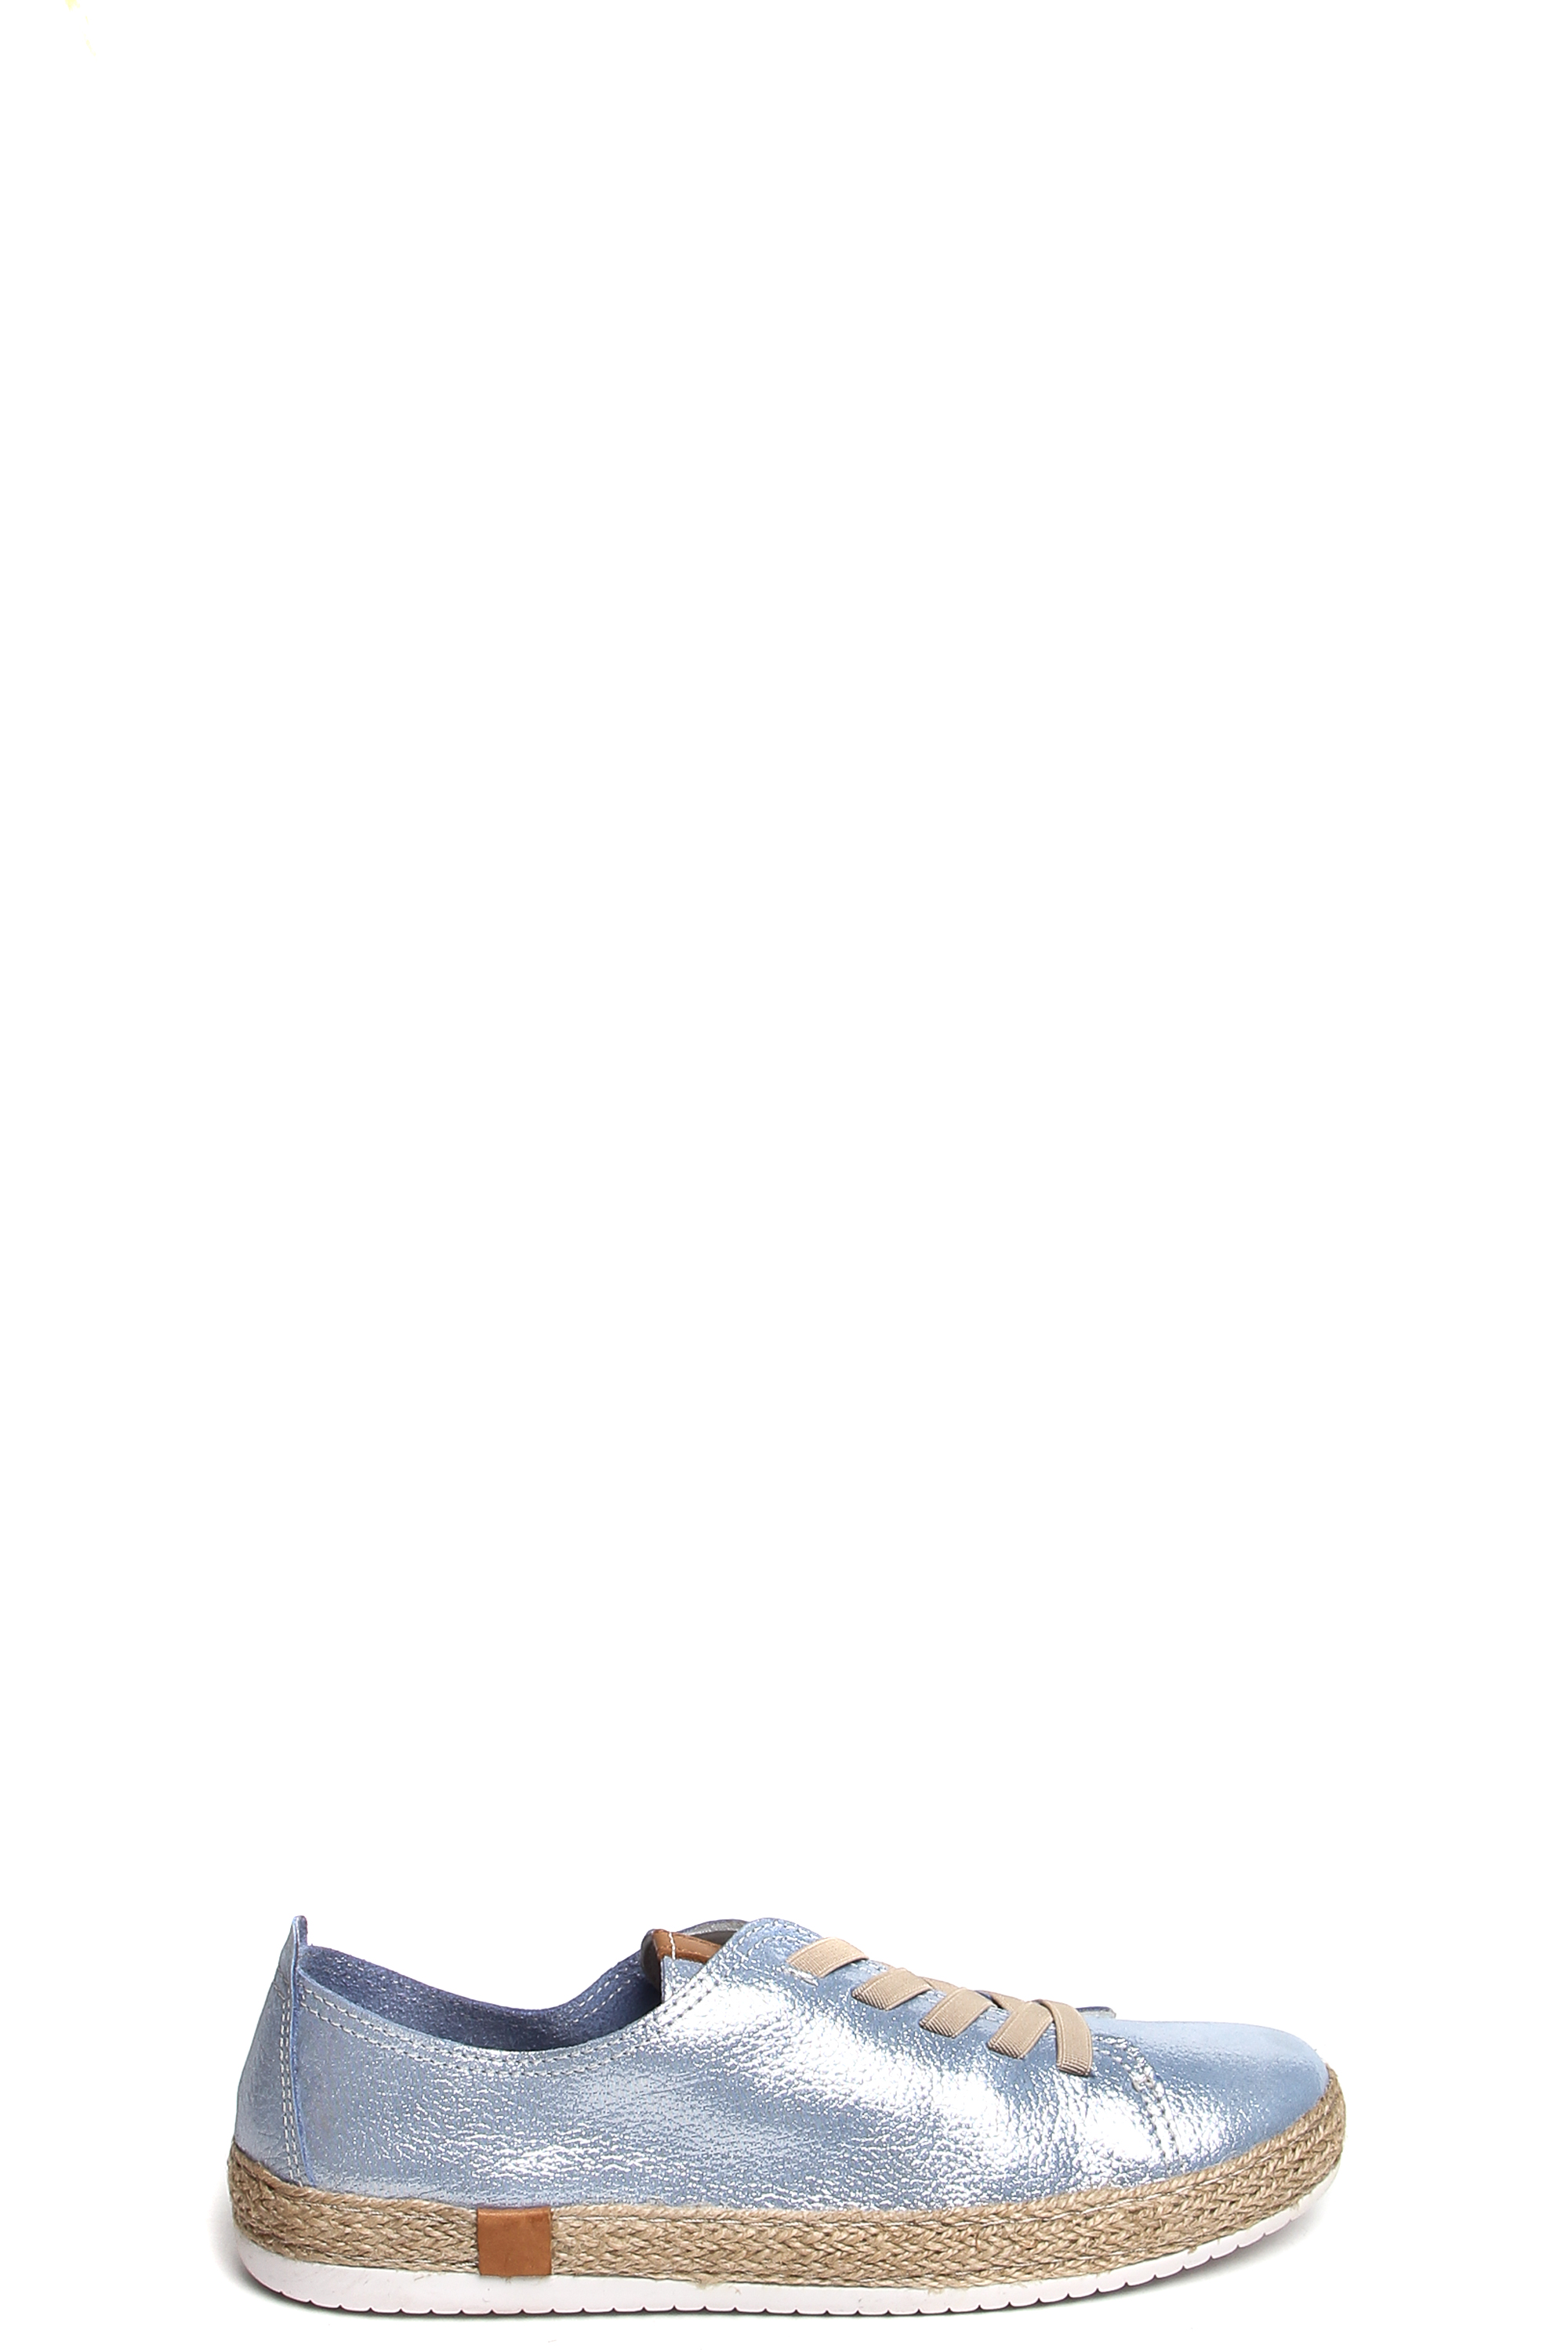 181570-1-2531 полуботинки  взрослый  жен. летн. натуральная кожа (велюр; сотен)/без подкладки/термоэ